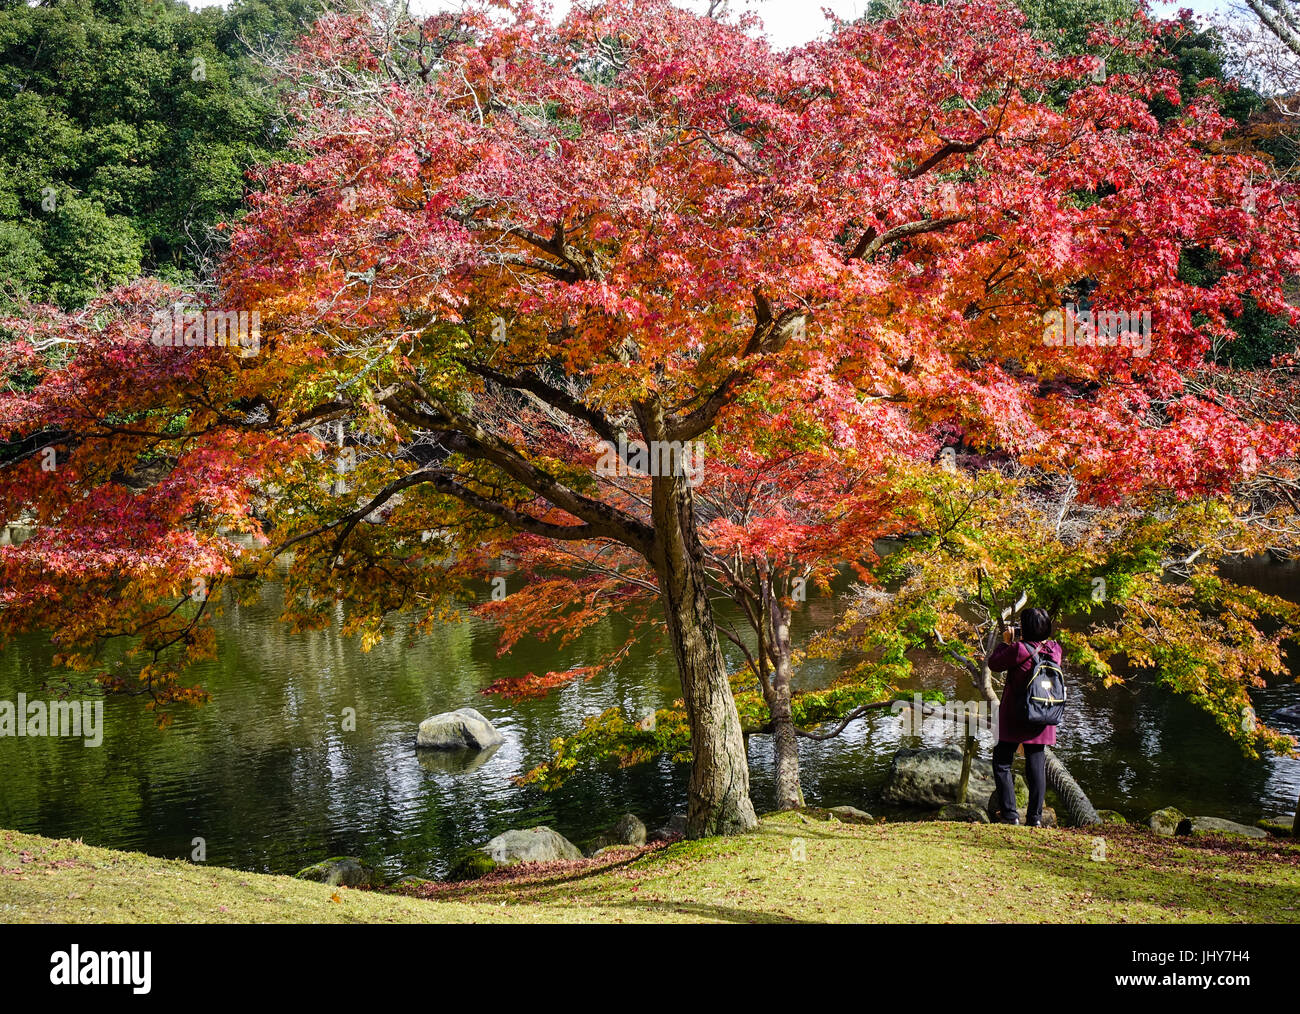 Les arbres d'érable rouge avec étang au parc de la ville de Nara, au Japon. Nara a été la capitale du Japon de 710 à 794, prêtant son nom à la période Nara. Banque D'Images